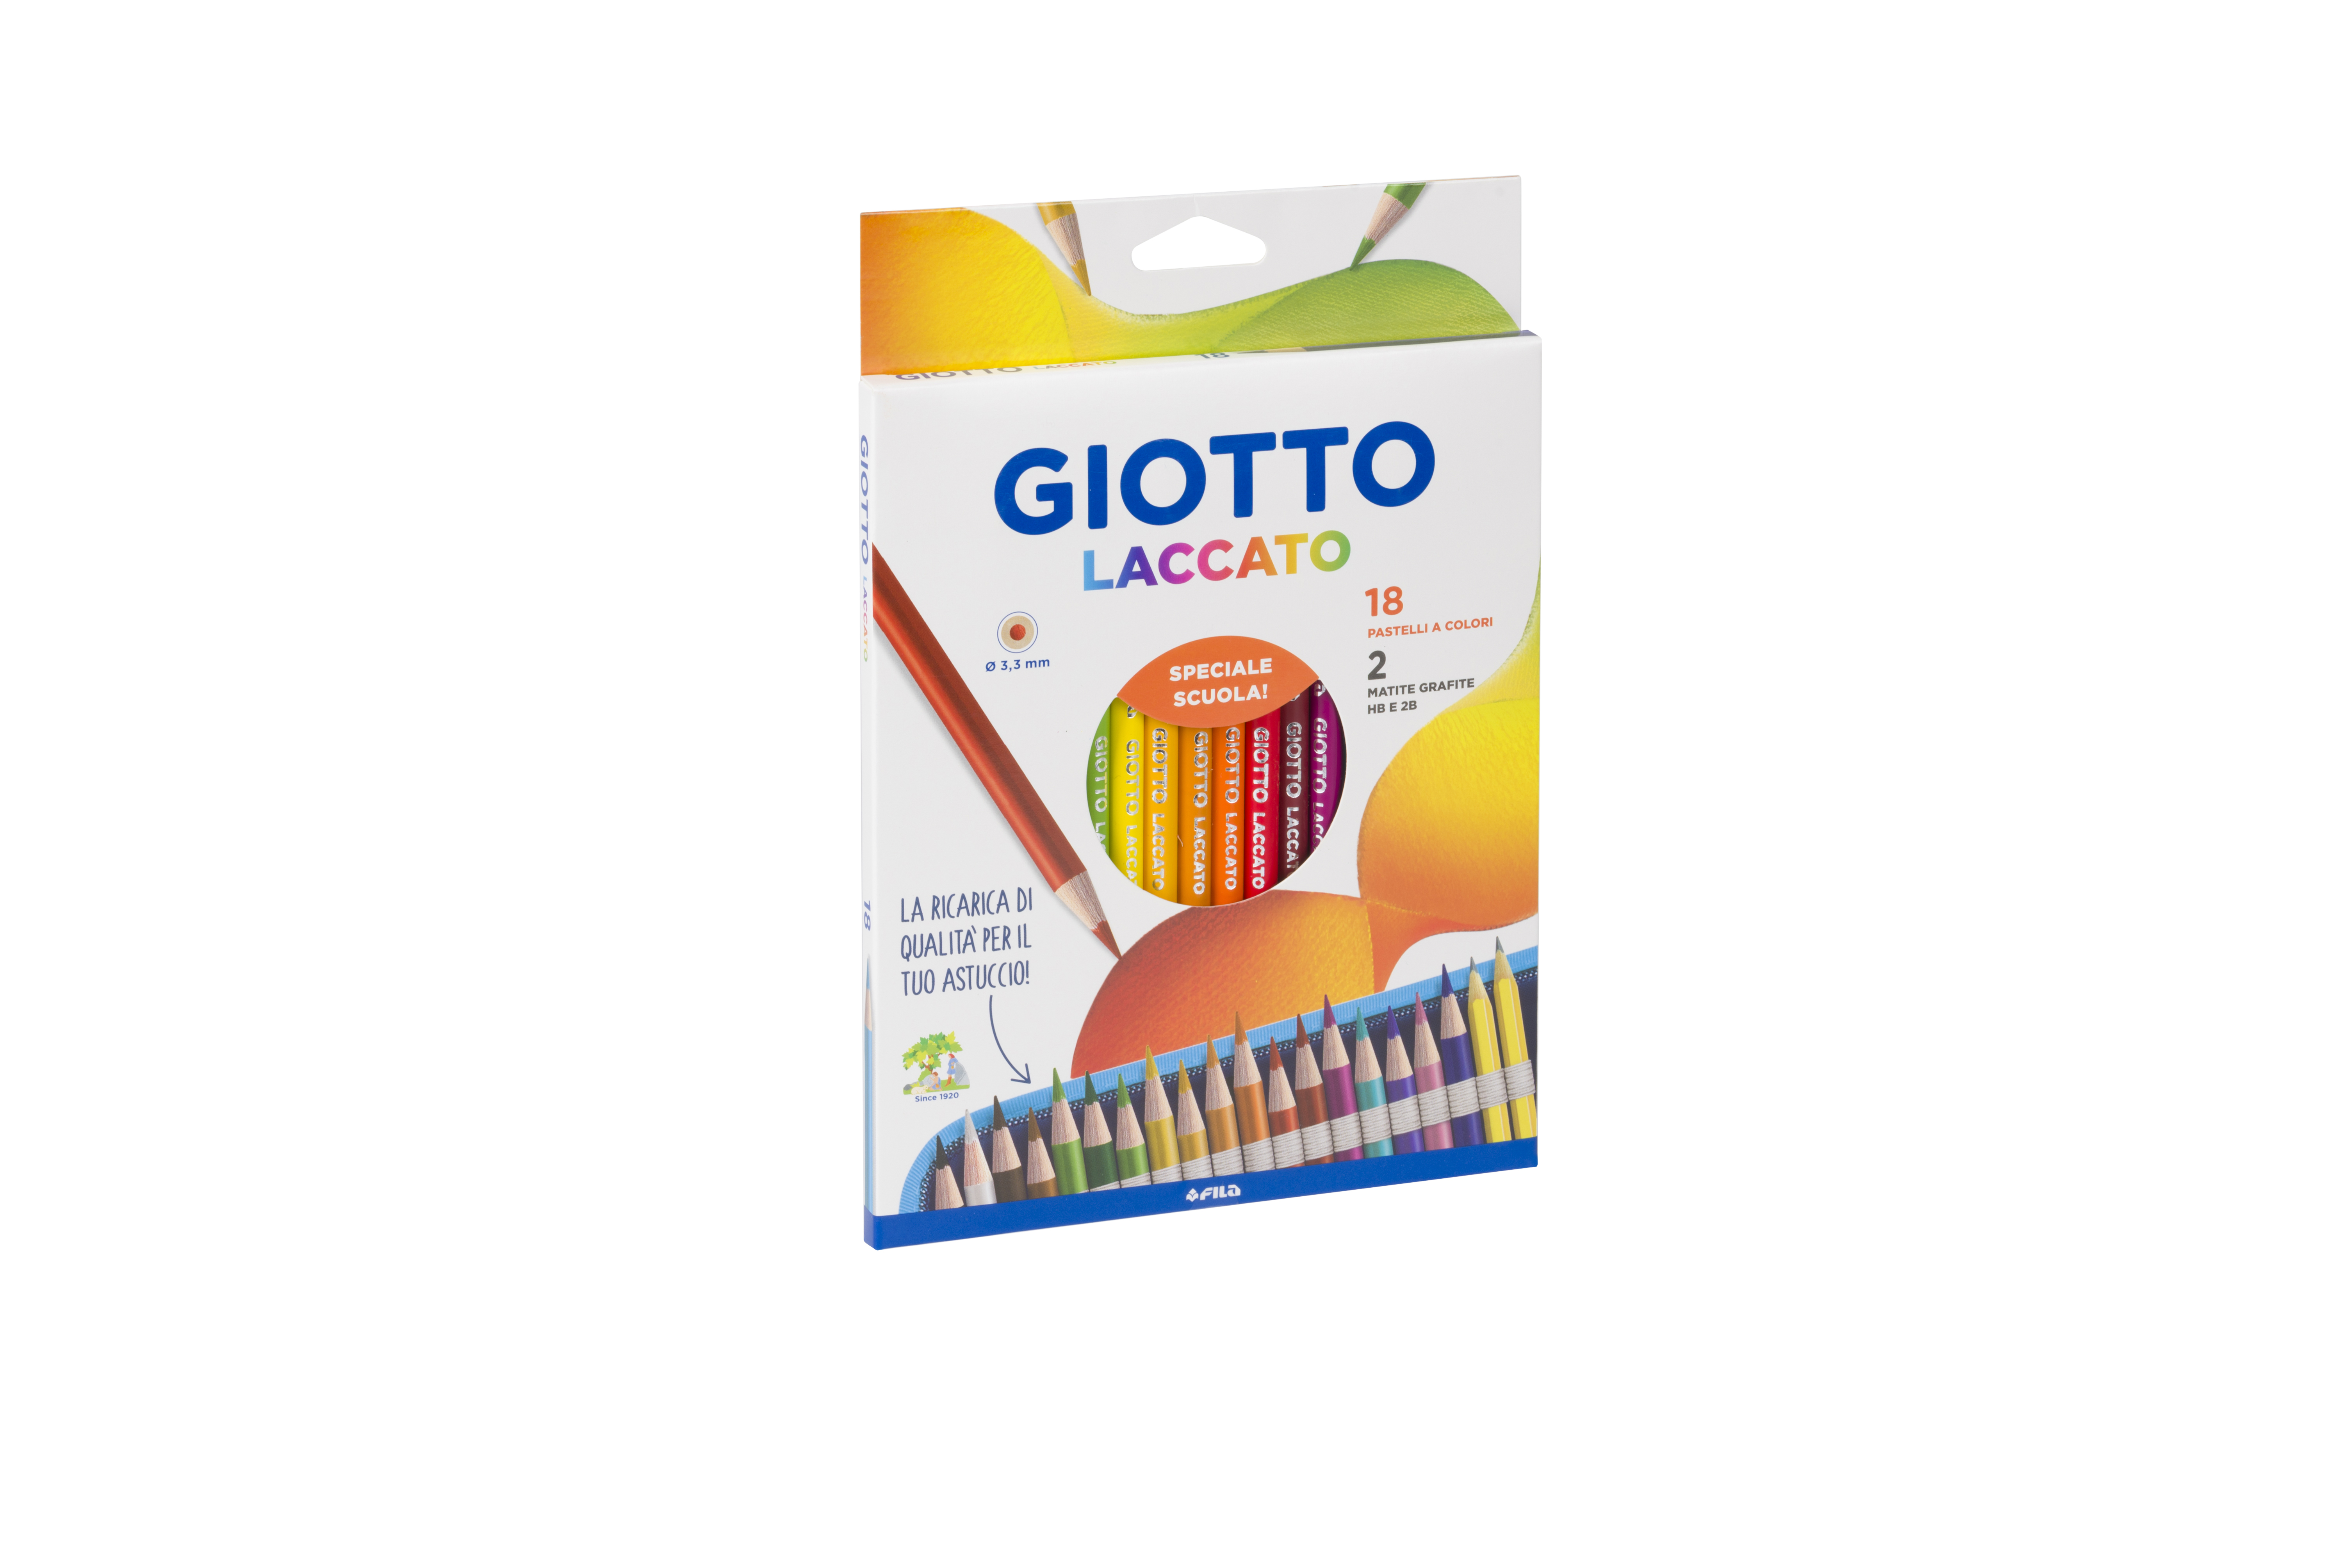 Il concorso GIOTTO “Crescere a colori” sarà anche on air in radio e tv fino al 15 ottobre.